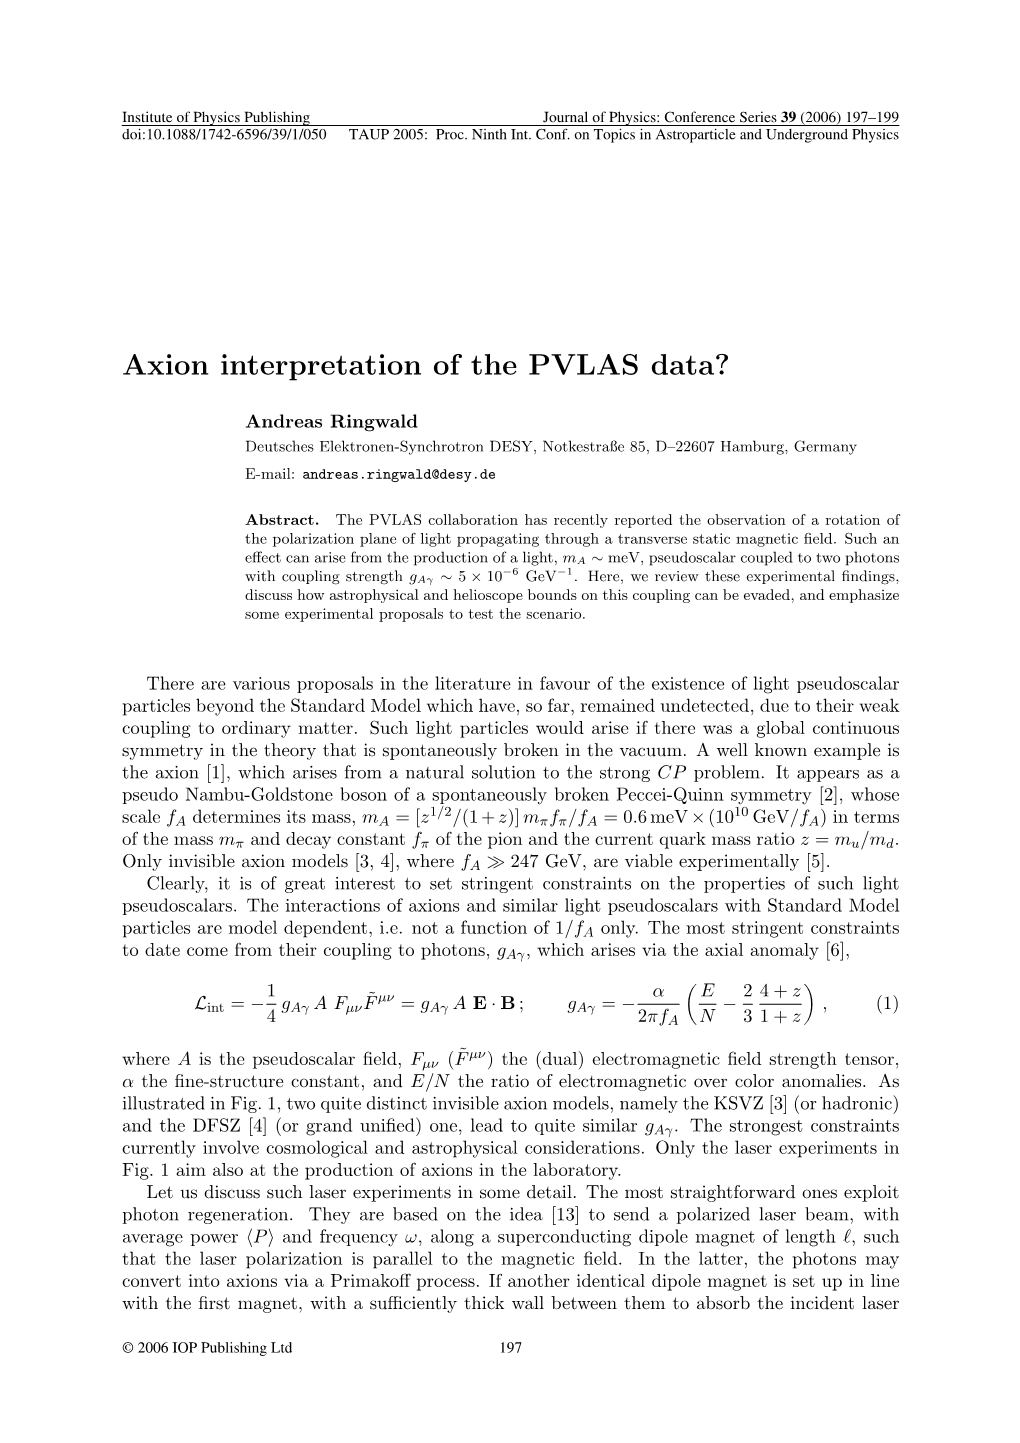 Axion Interpretation of the PVLAS Data?